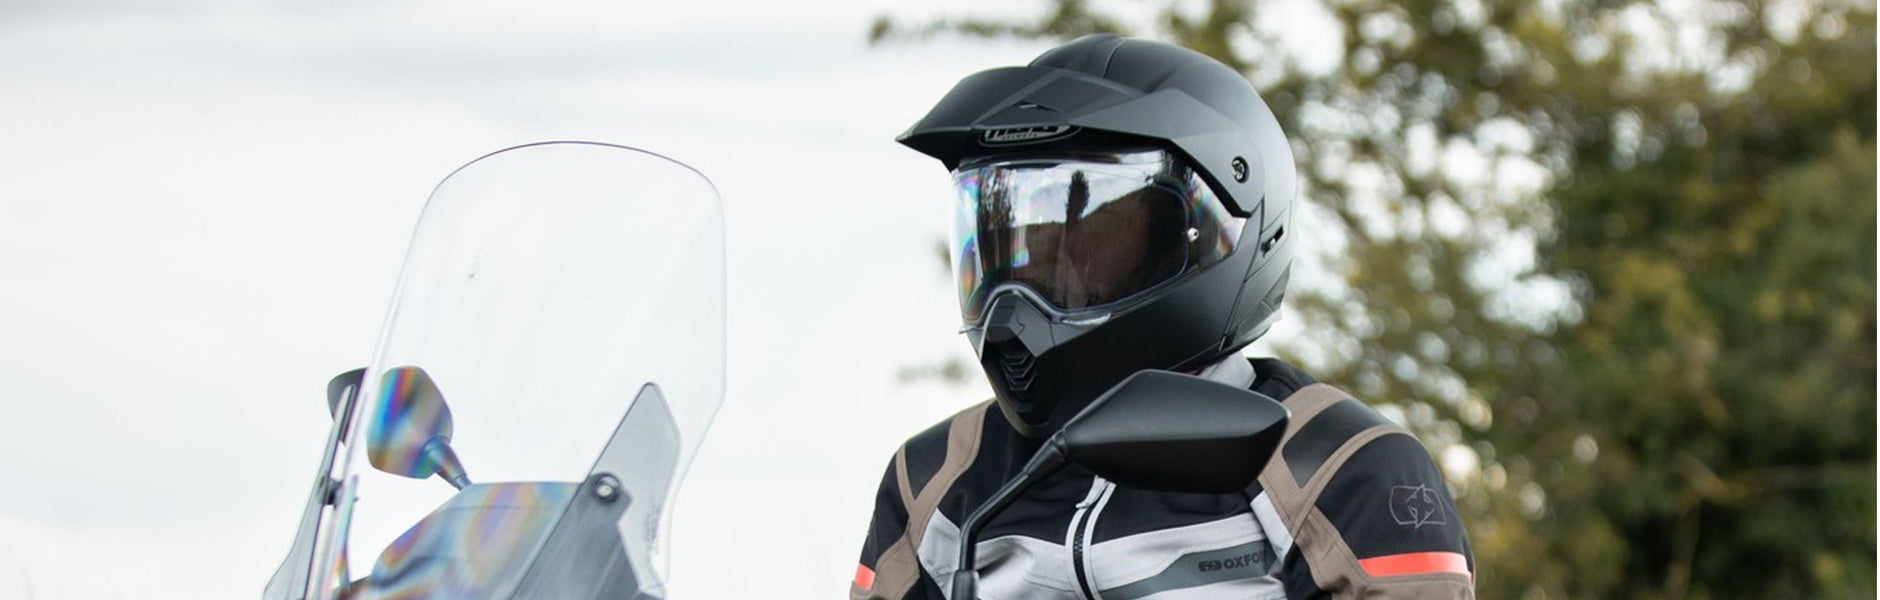 Cross-Enduro Helmets best for dirt bike riders